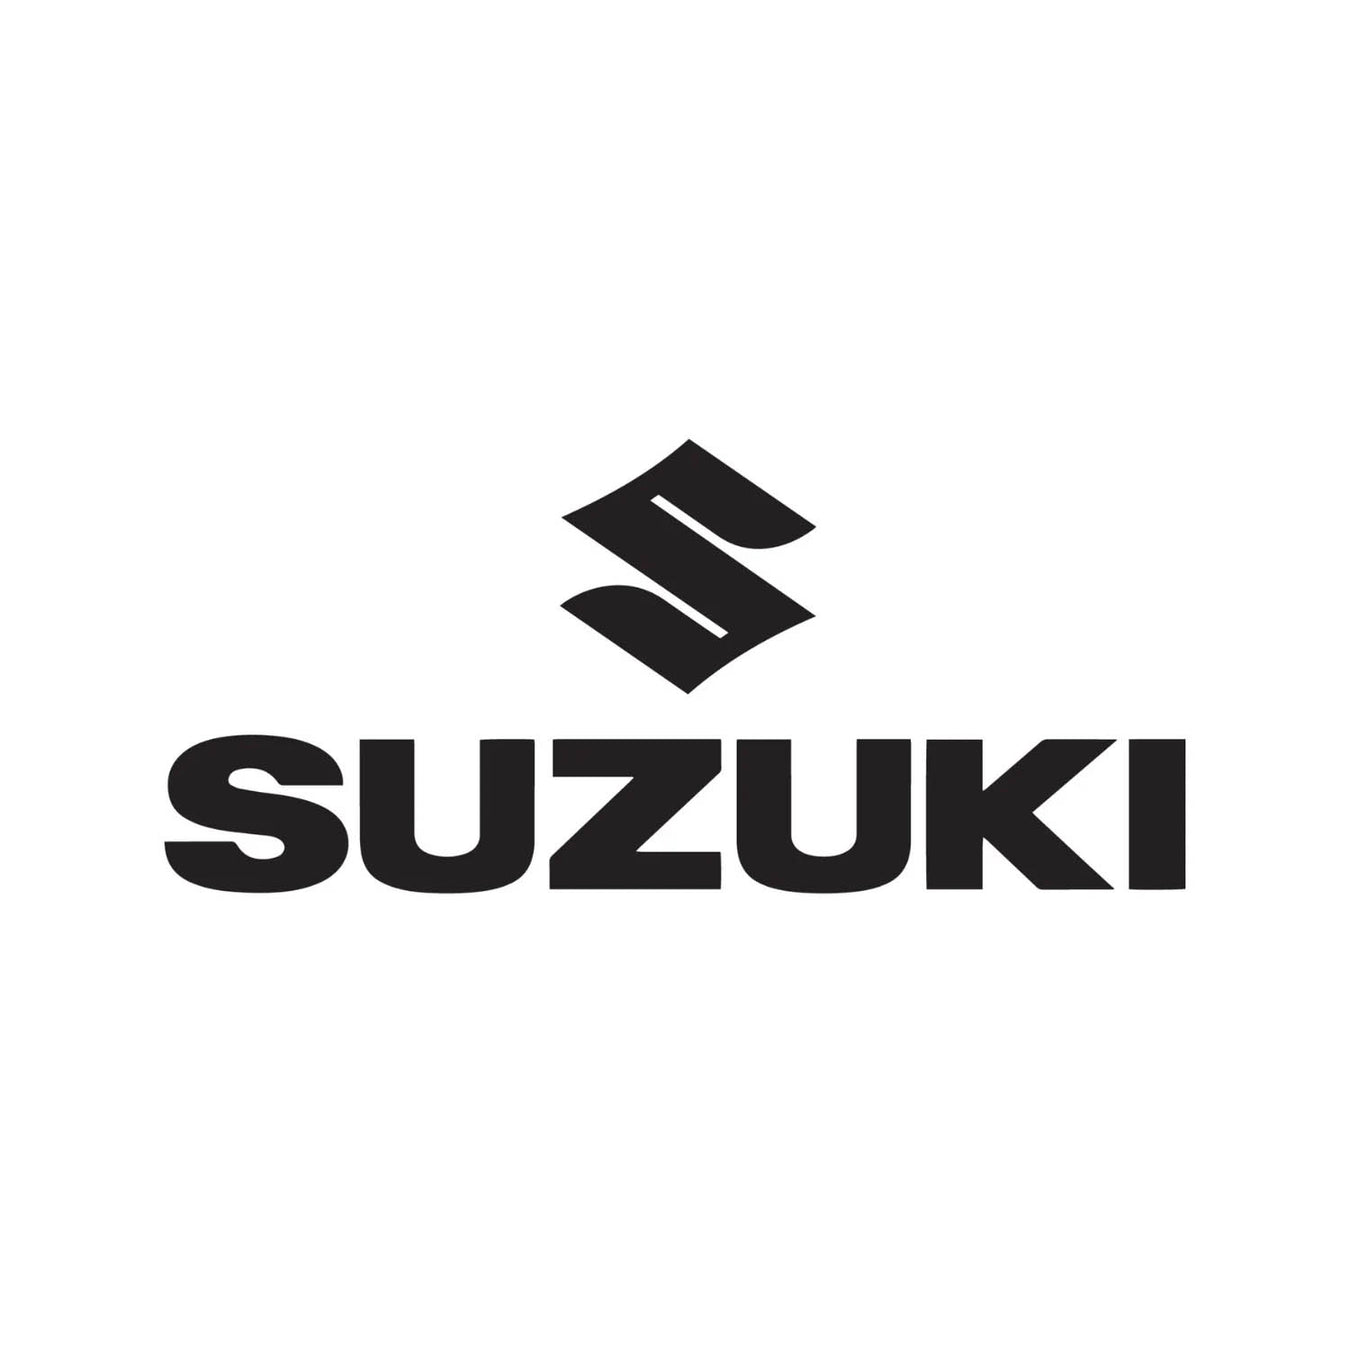 Suzuki Boot Liners